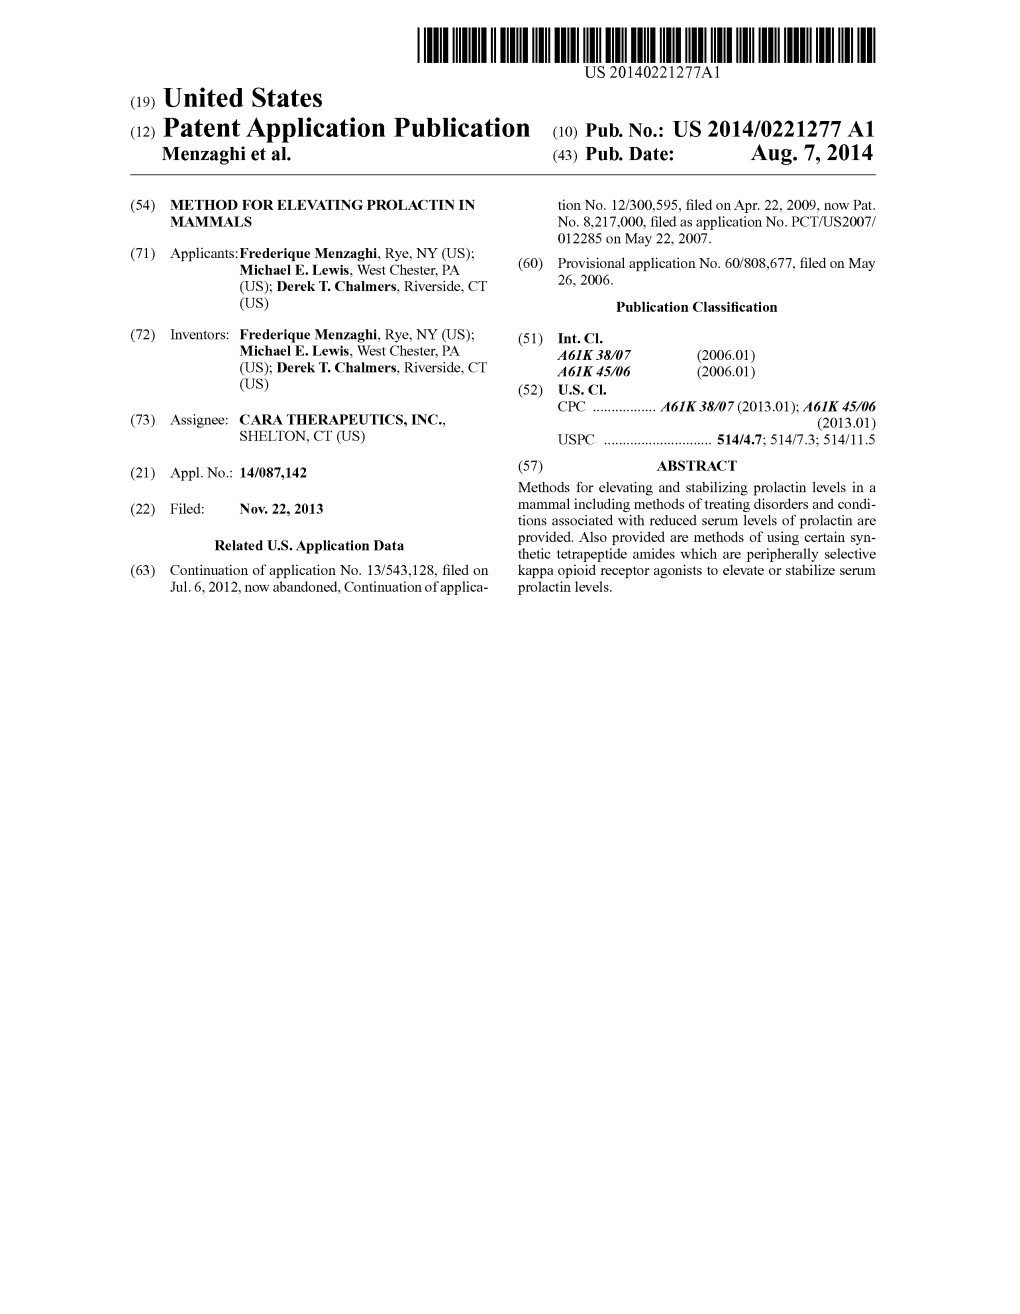 (12) Patent Application Publication (10) Pub. No.: US 2014/0221277 A1 Menzaghi Et Al